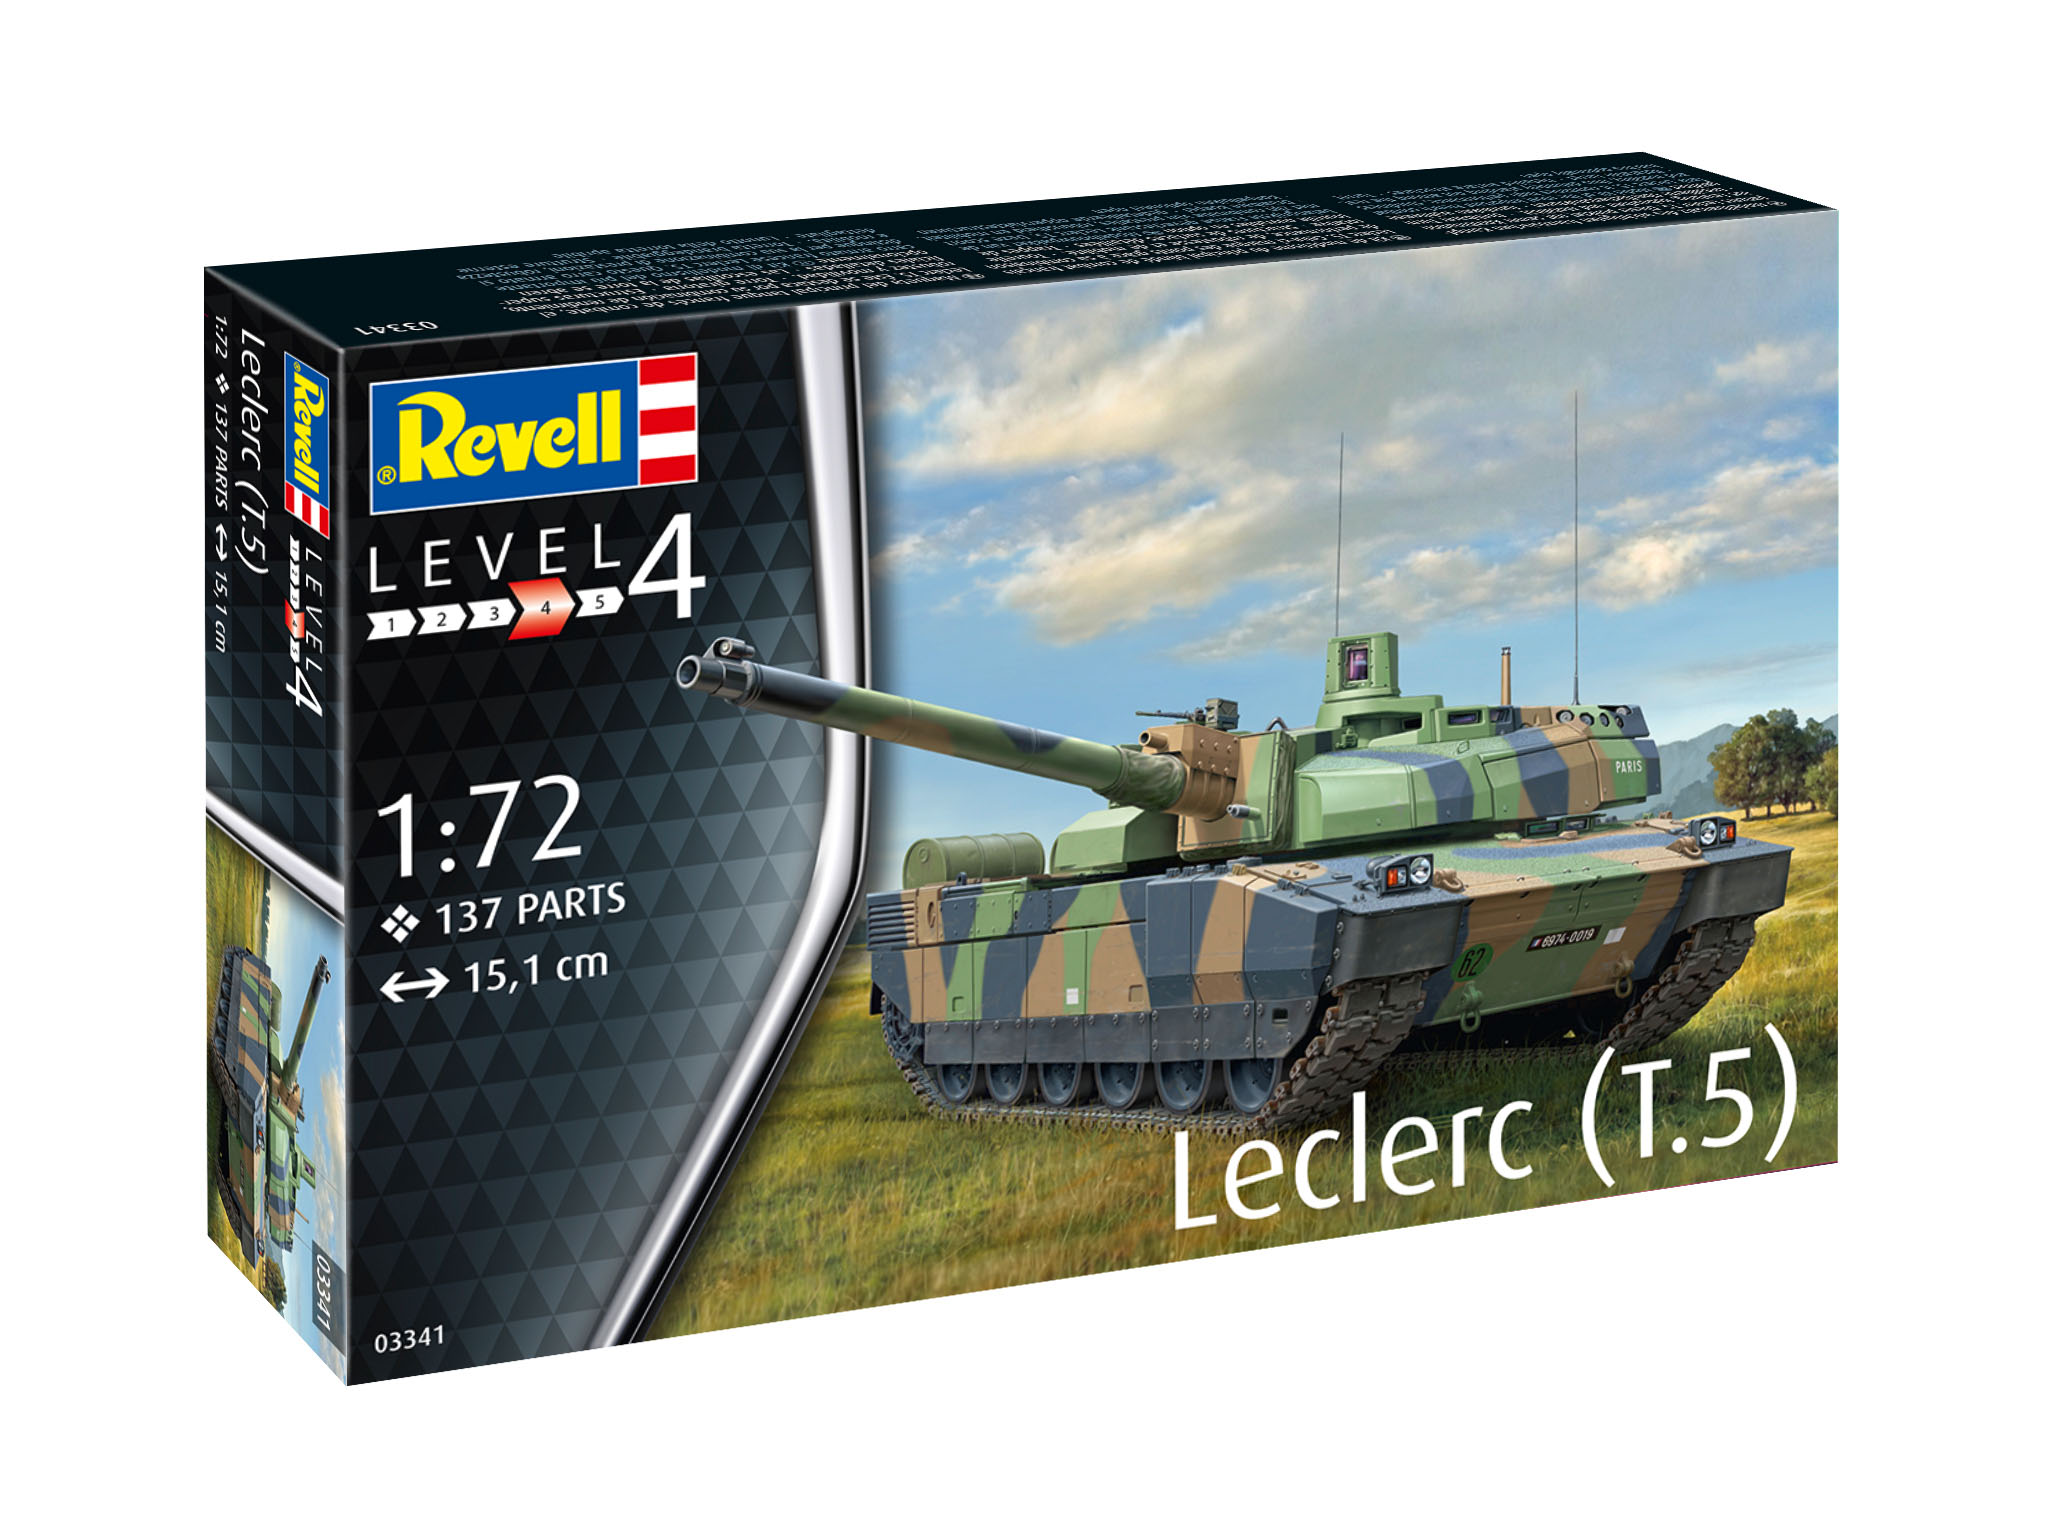 Leclerc T5 - 03341